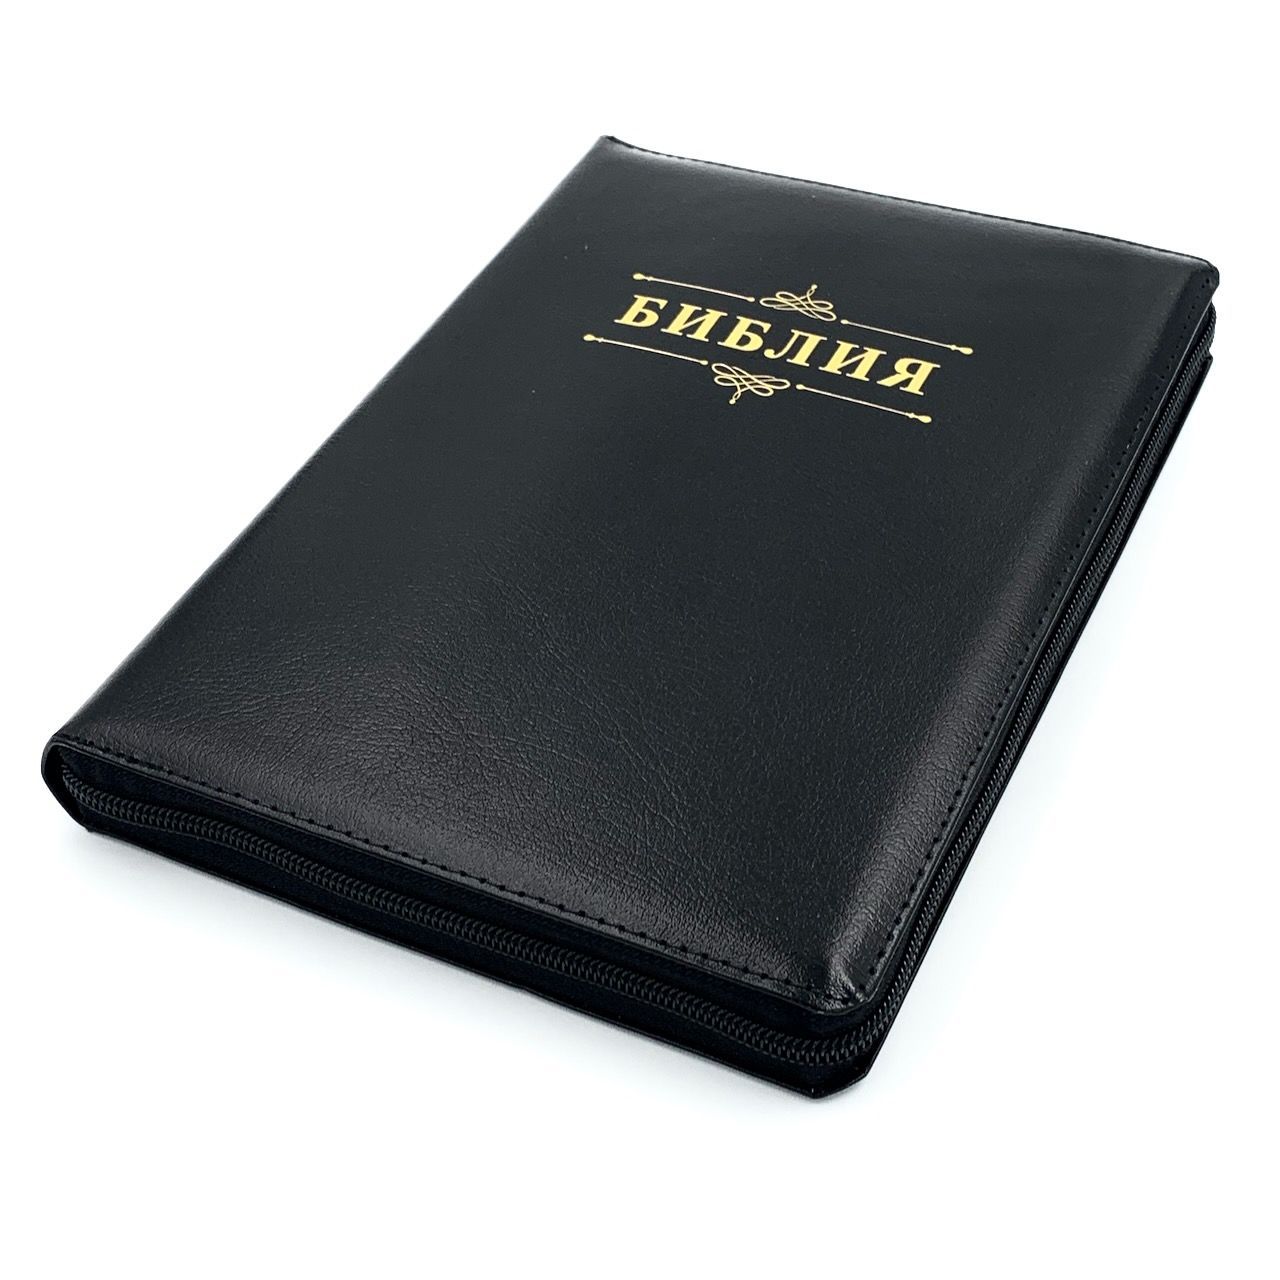 Библия 076z код 23076-21,  надпись "Библия" золотом , кожаный переплет на молнии, цвет черный металлик пятнистый, размер 180x243 мм